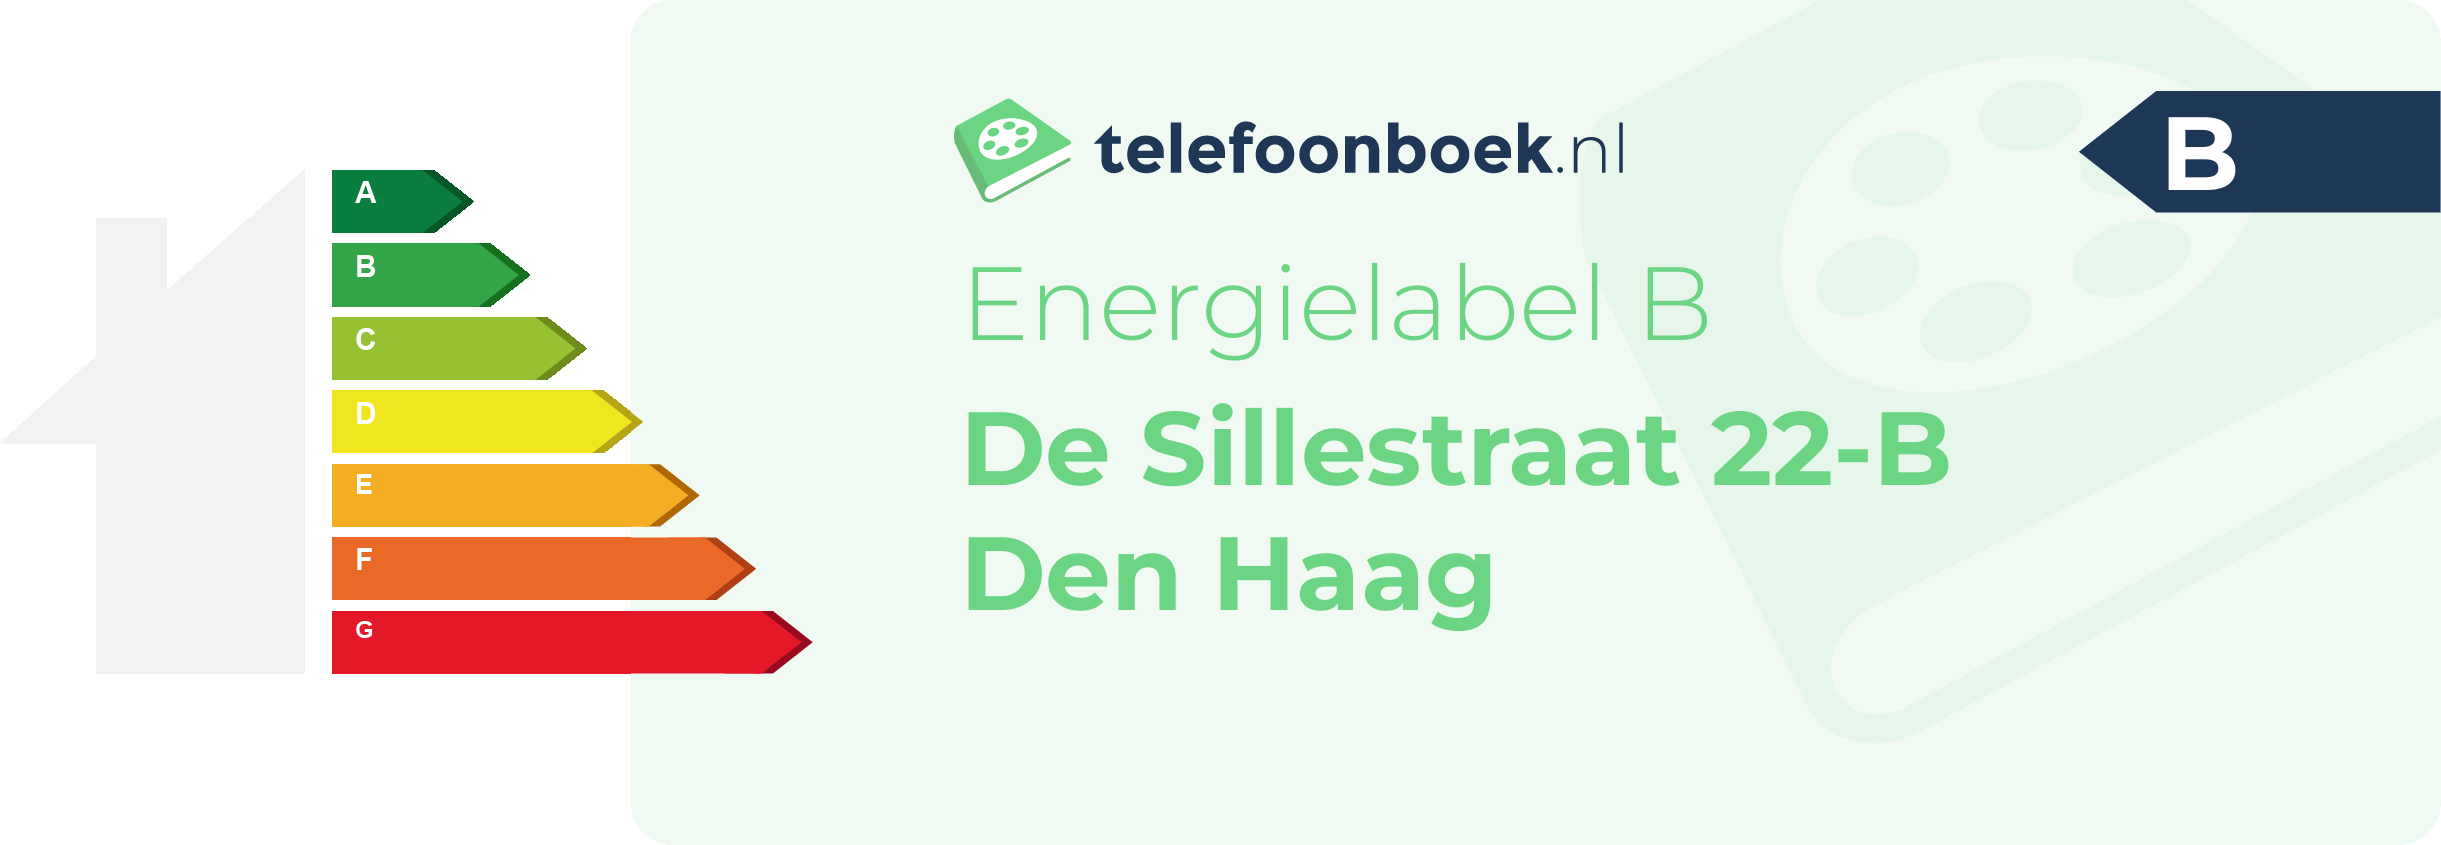 Energielabel De Sillestraat 22-B Den Haag